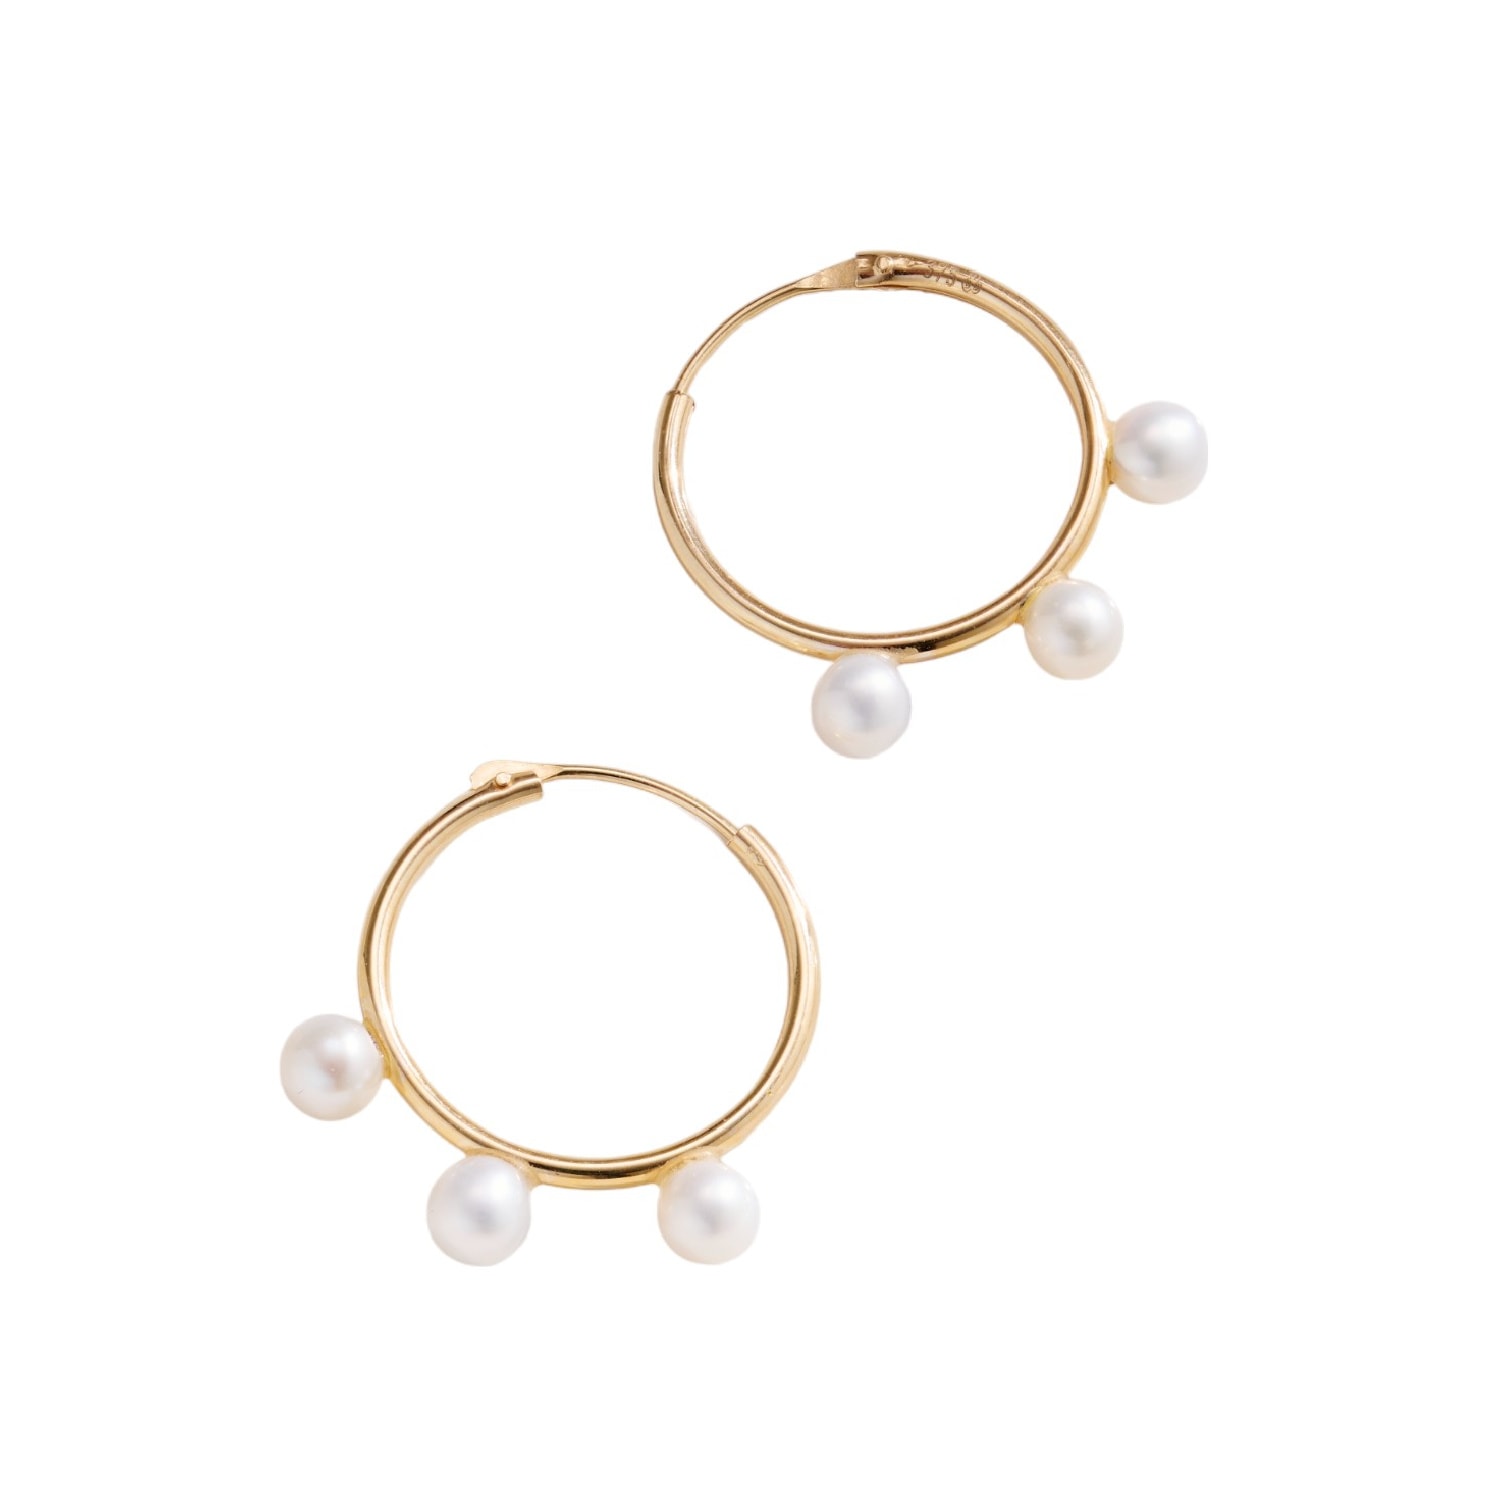 Posh Totty Designs Women's Gold Triple Pearl Hoop Earrings